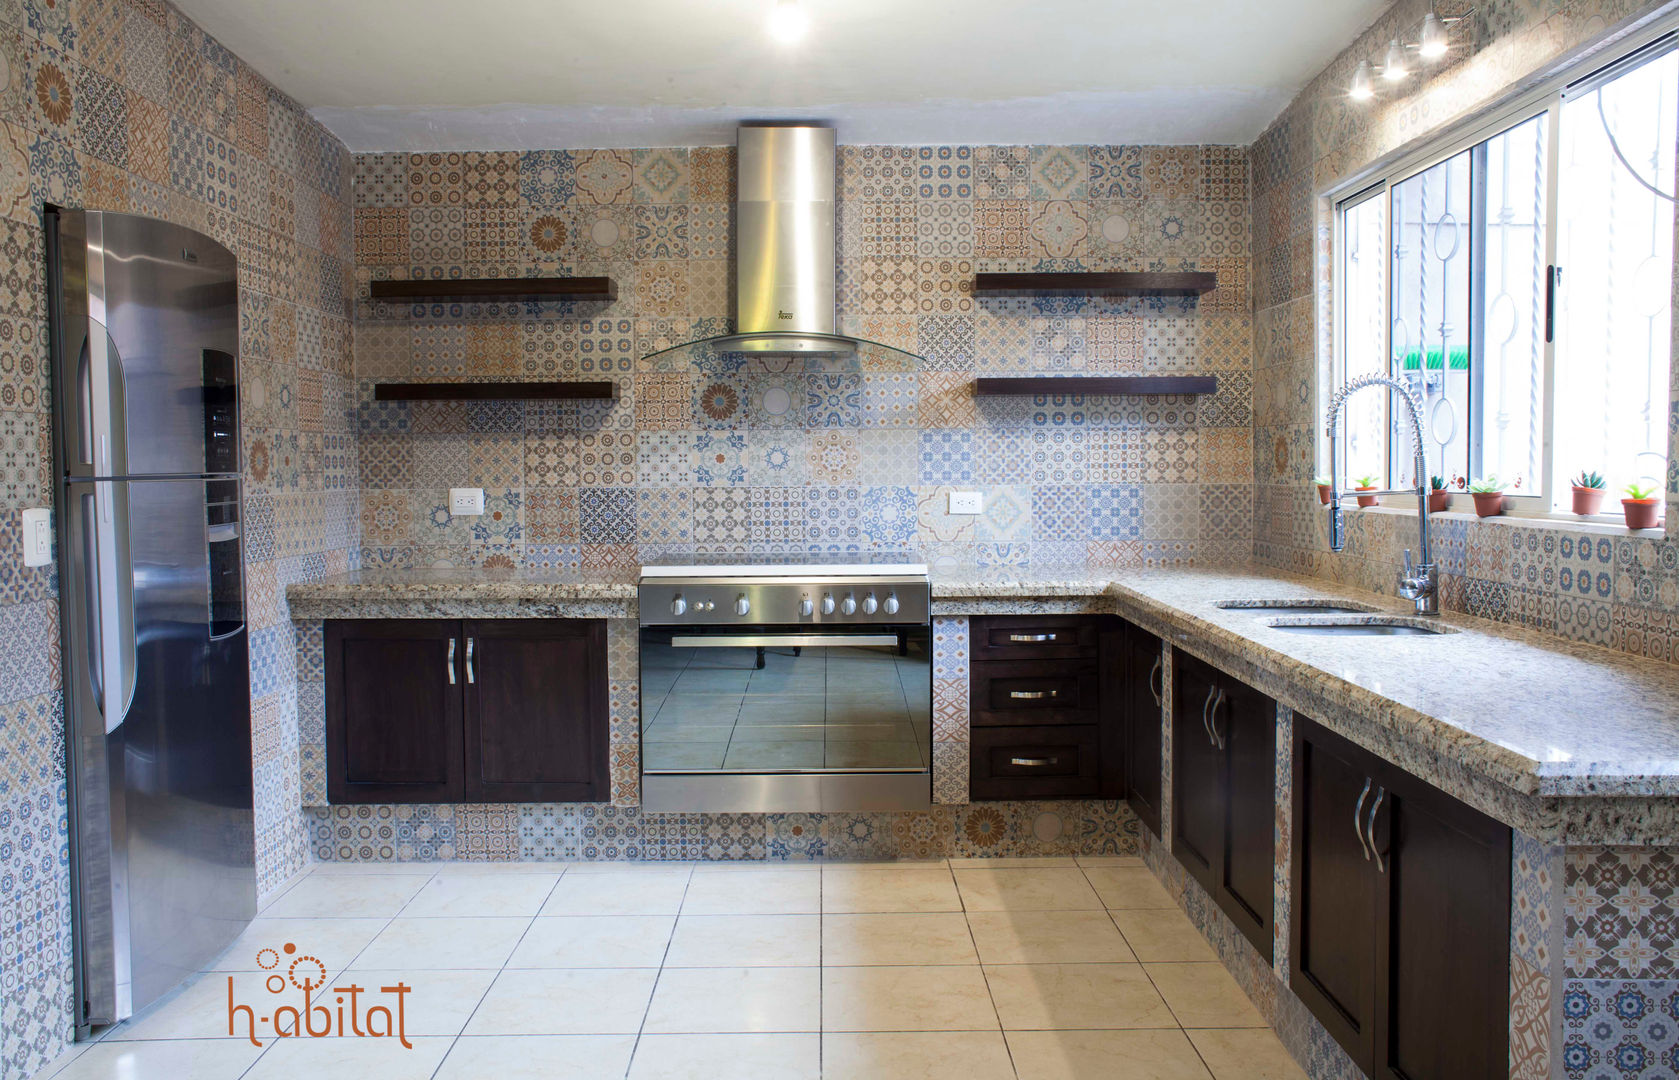 Cocina Moderna con azulejo Vintage, H-abitat Diseño & Interiores H-abitat Diseño & Interiores Dapur Gaya Eklektik Ubin